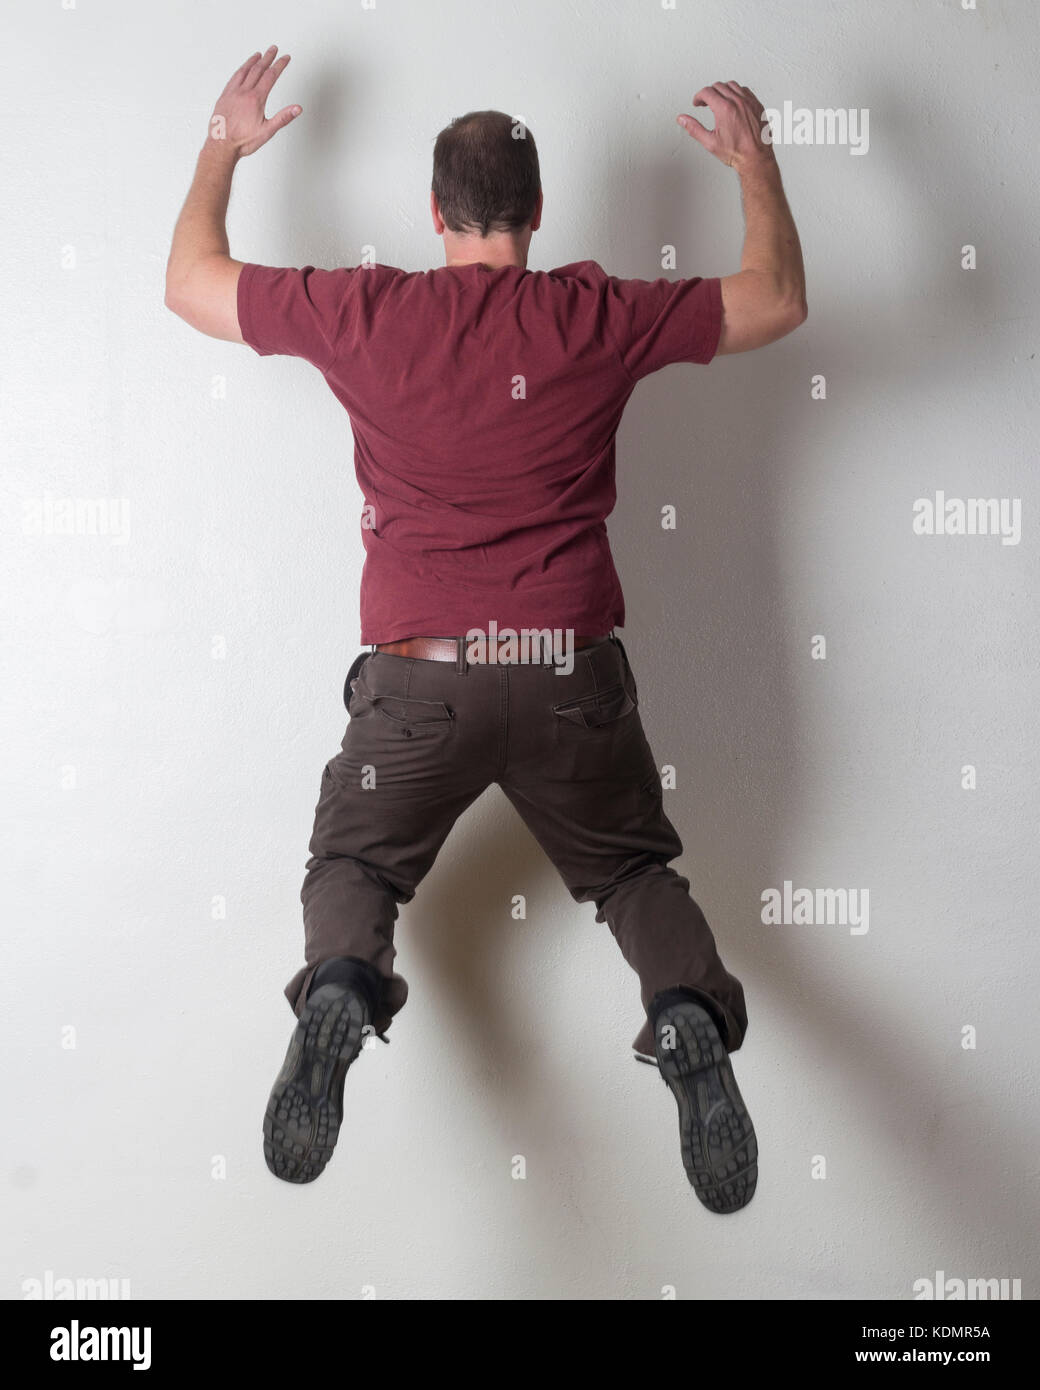 Hombre saltando contra una pared blanca. Foto de stock